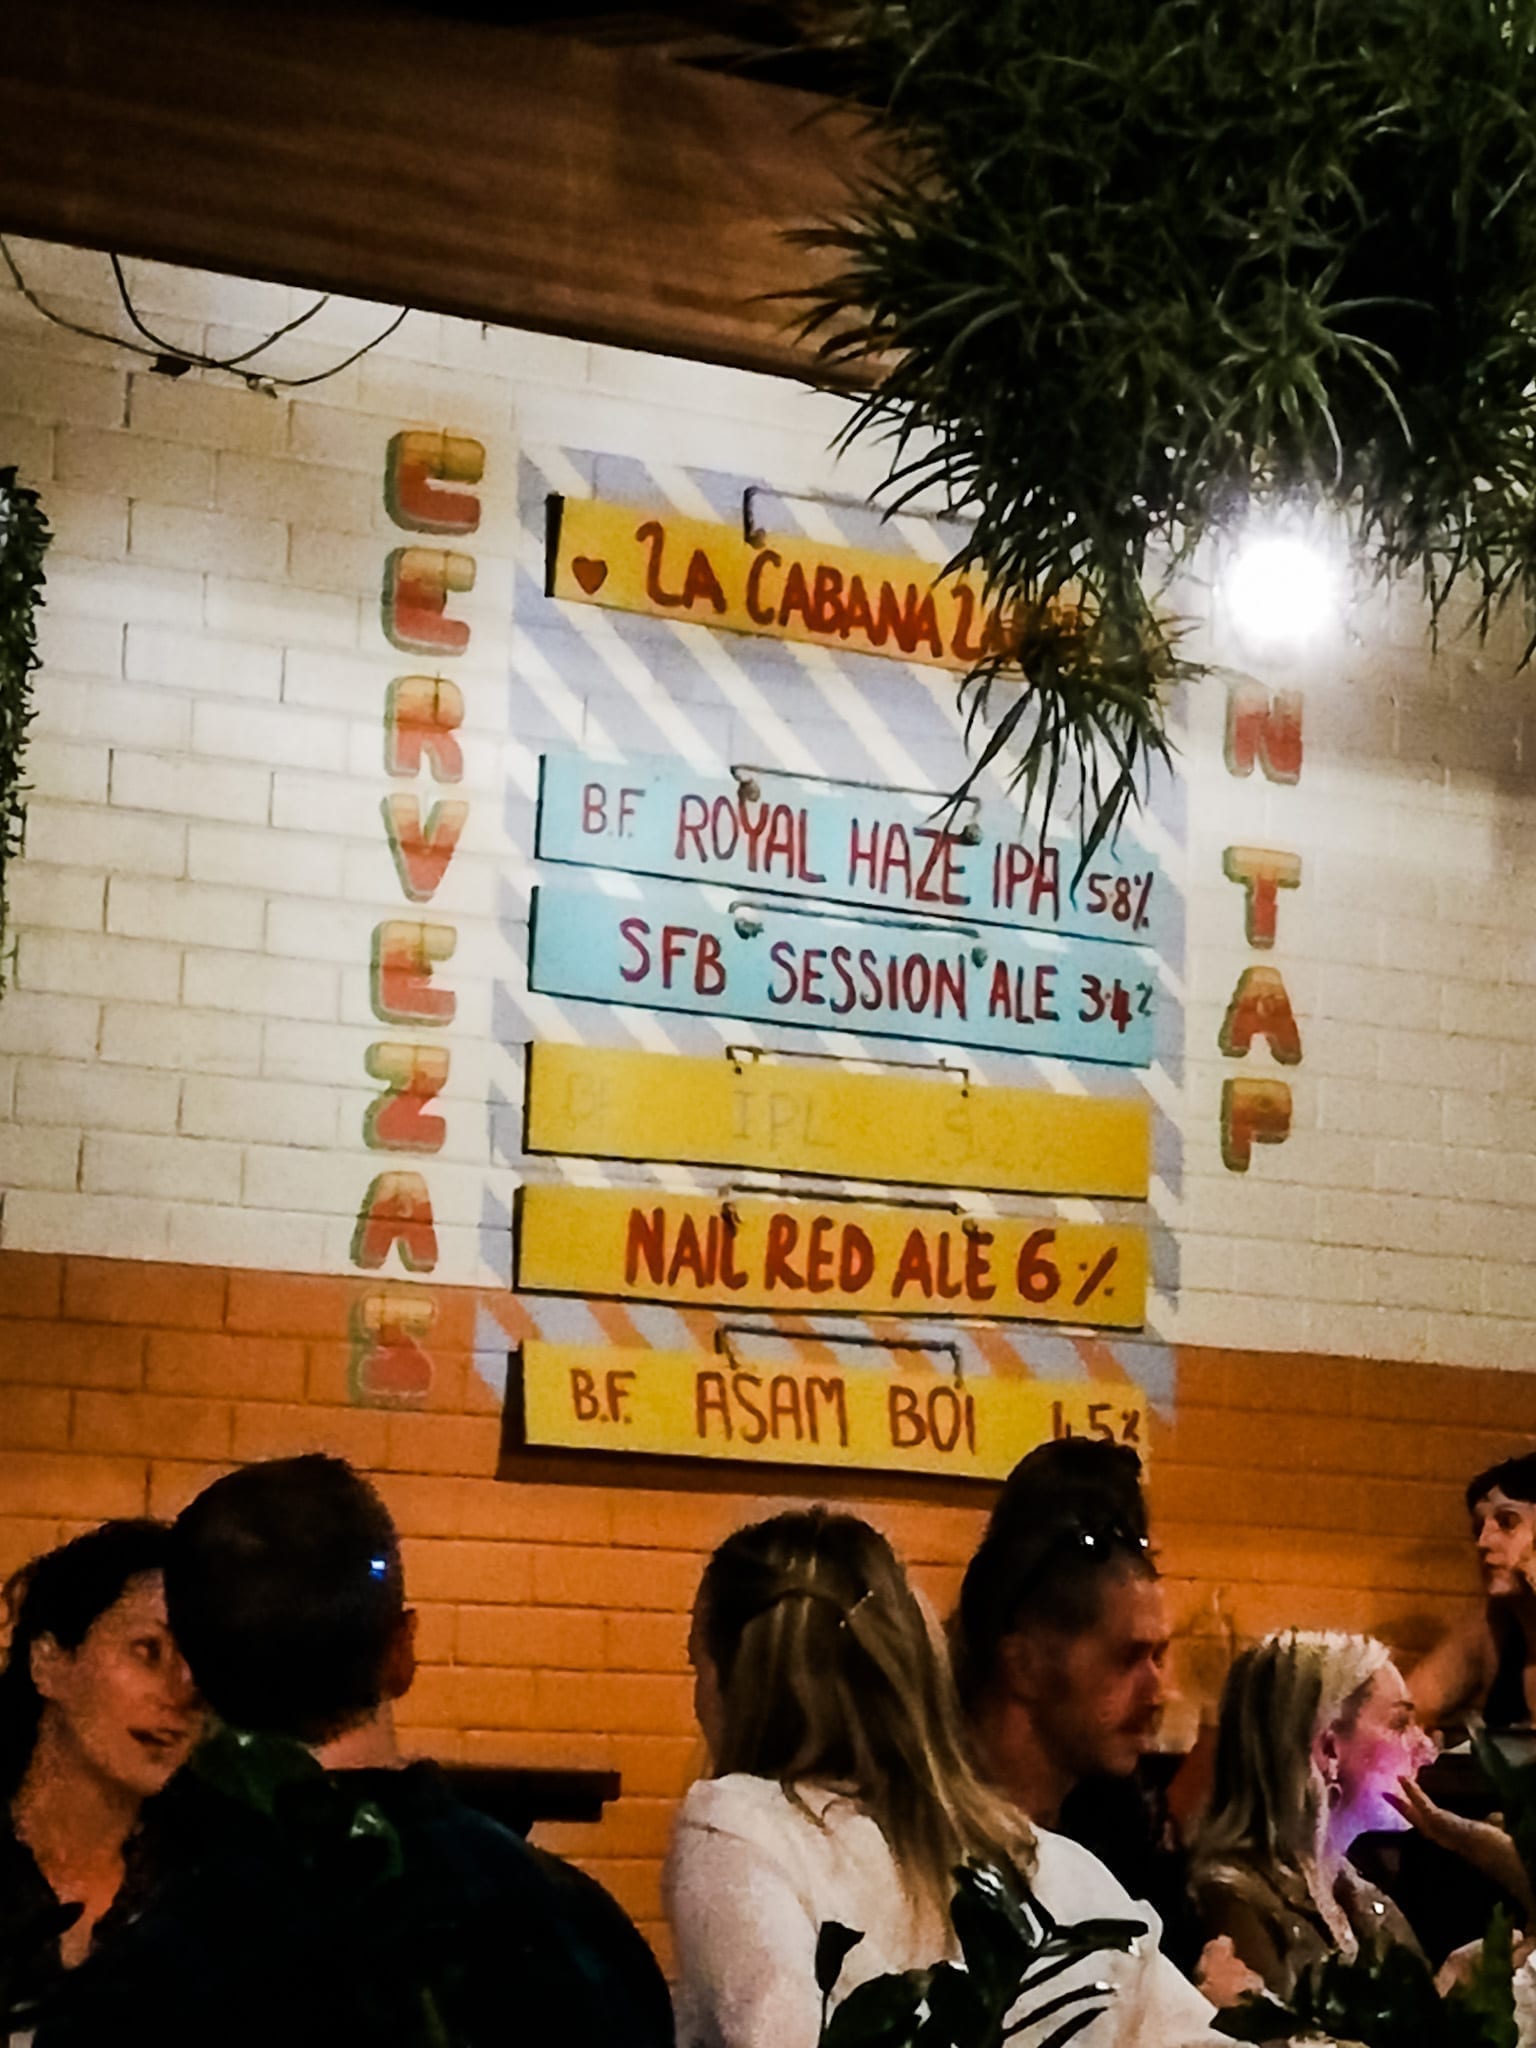 LA CABANA Bar and Taqueria